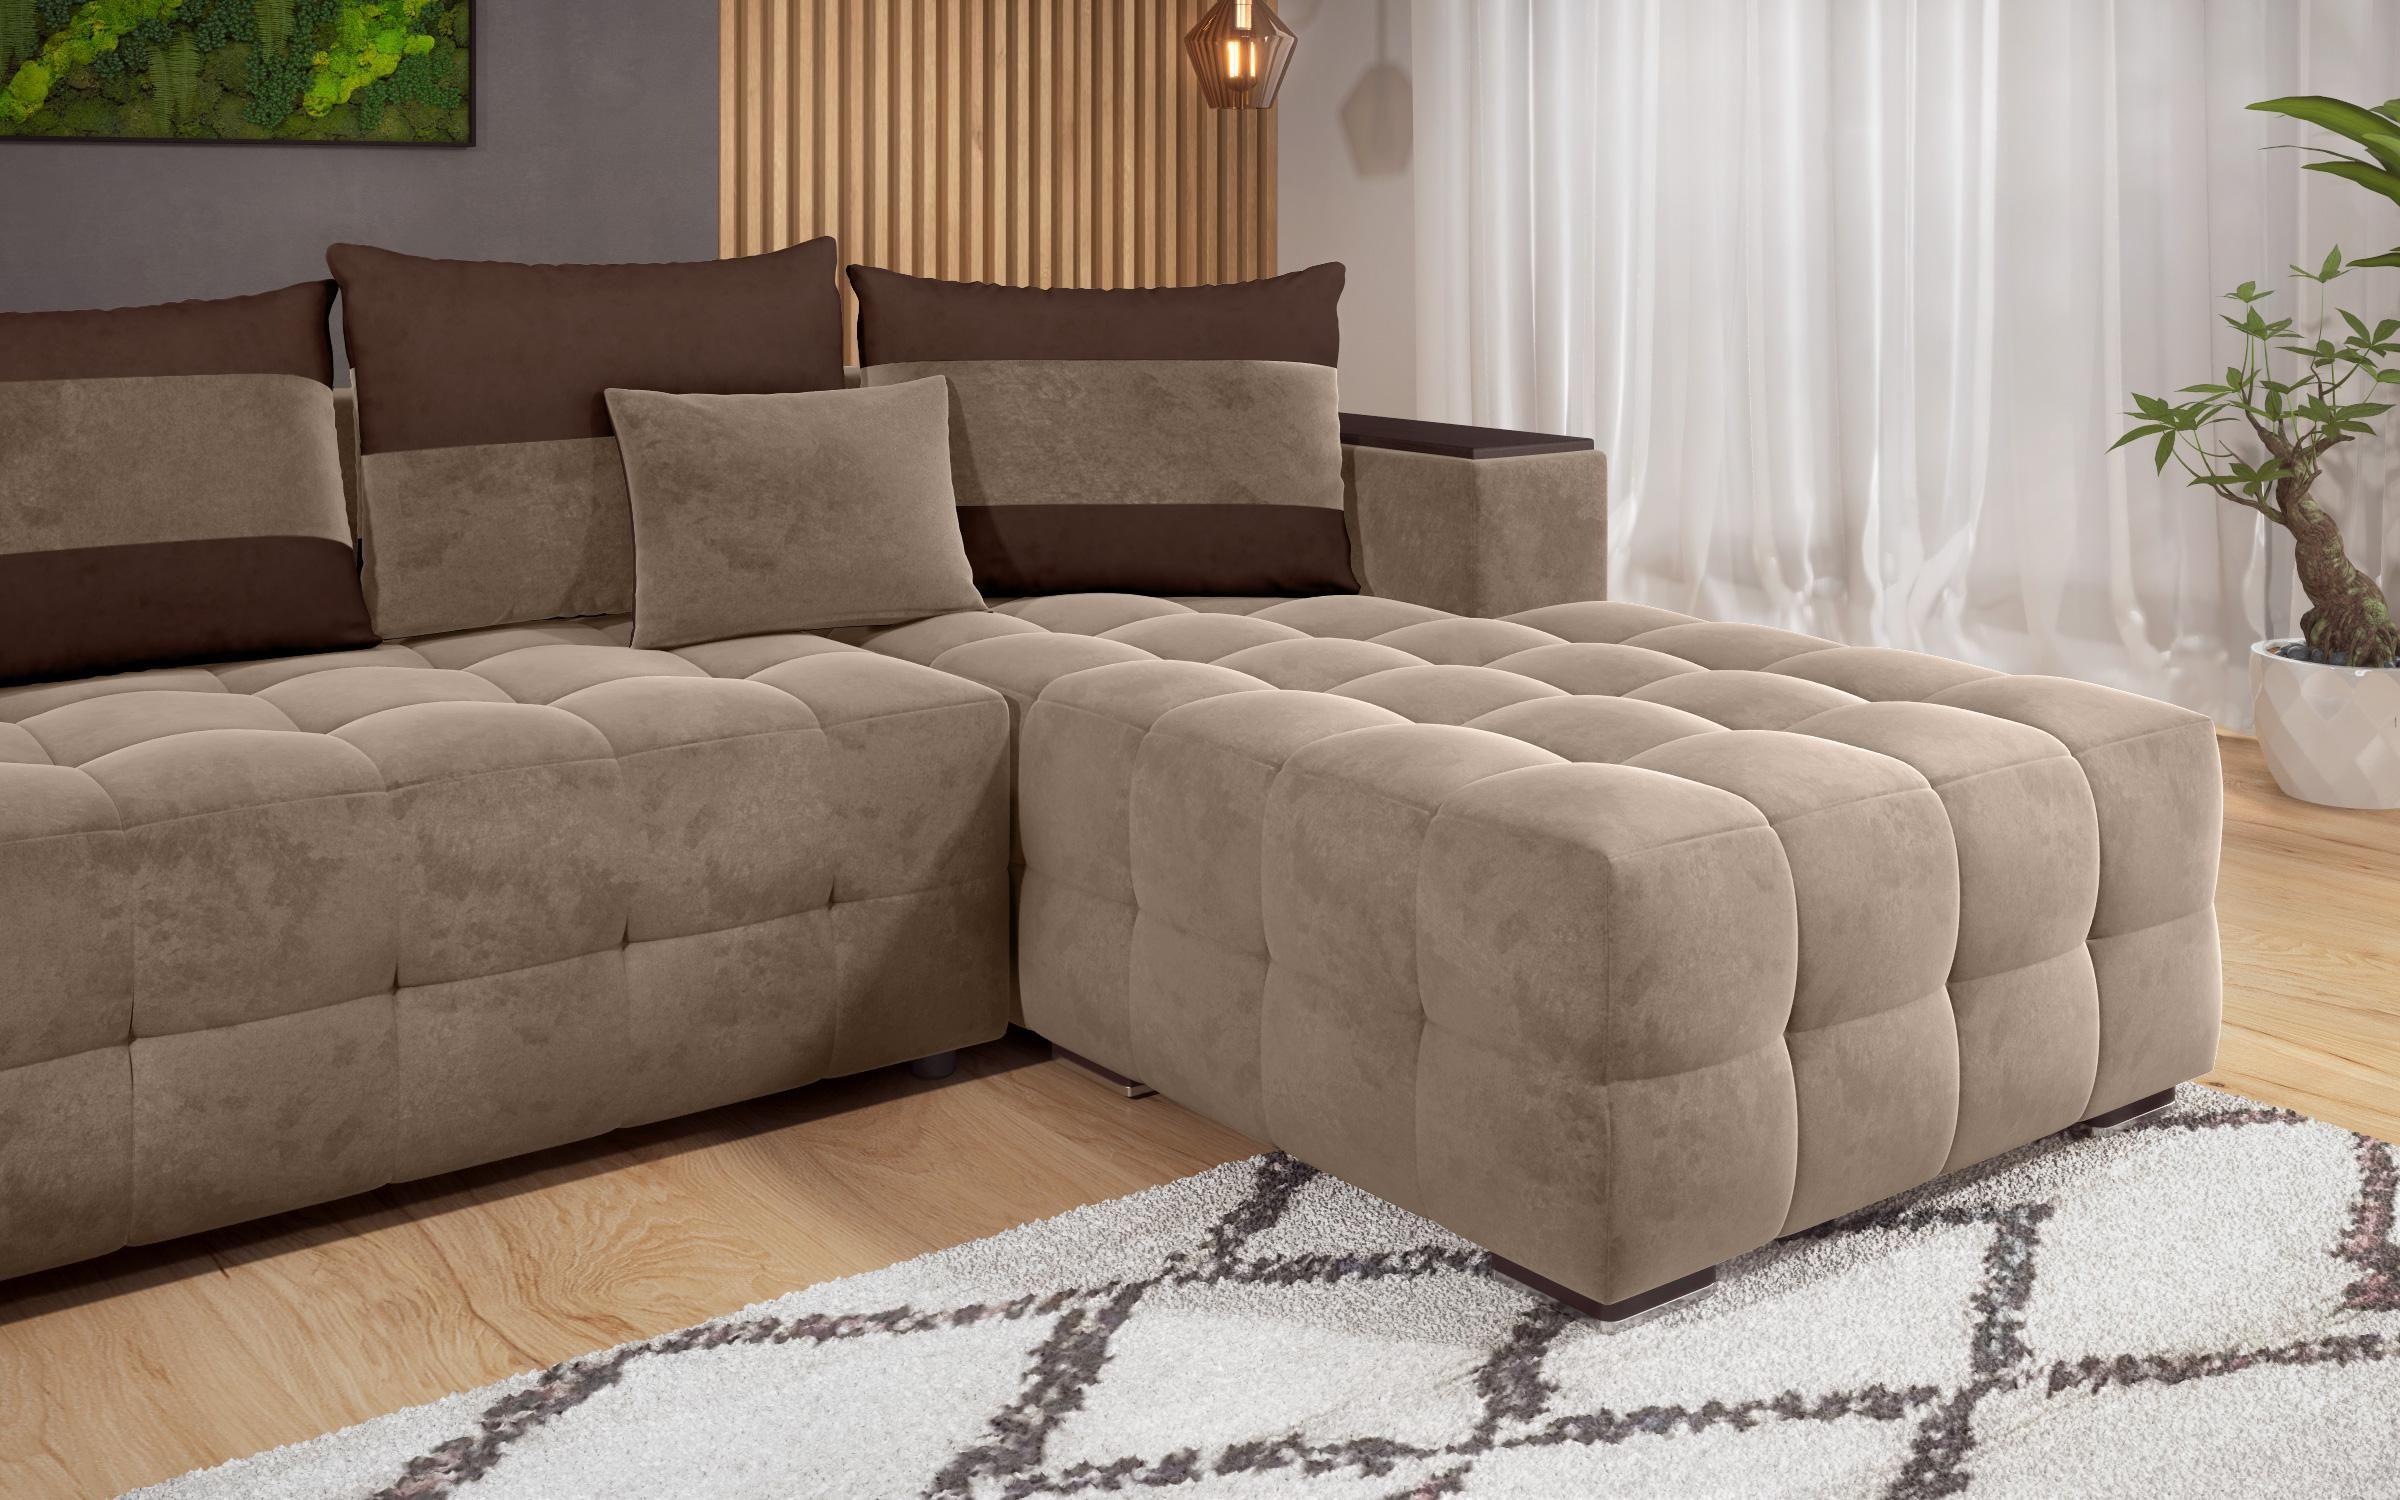 Γωνιακός καναπές - κρεβάτι με ανάκλιντρο και μπράτσο μίνι ραφιέρα Melvin, σκούρο μπεζ + σκούρο καφέ  9